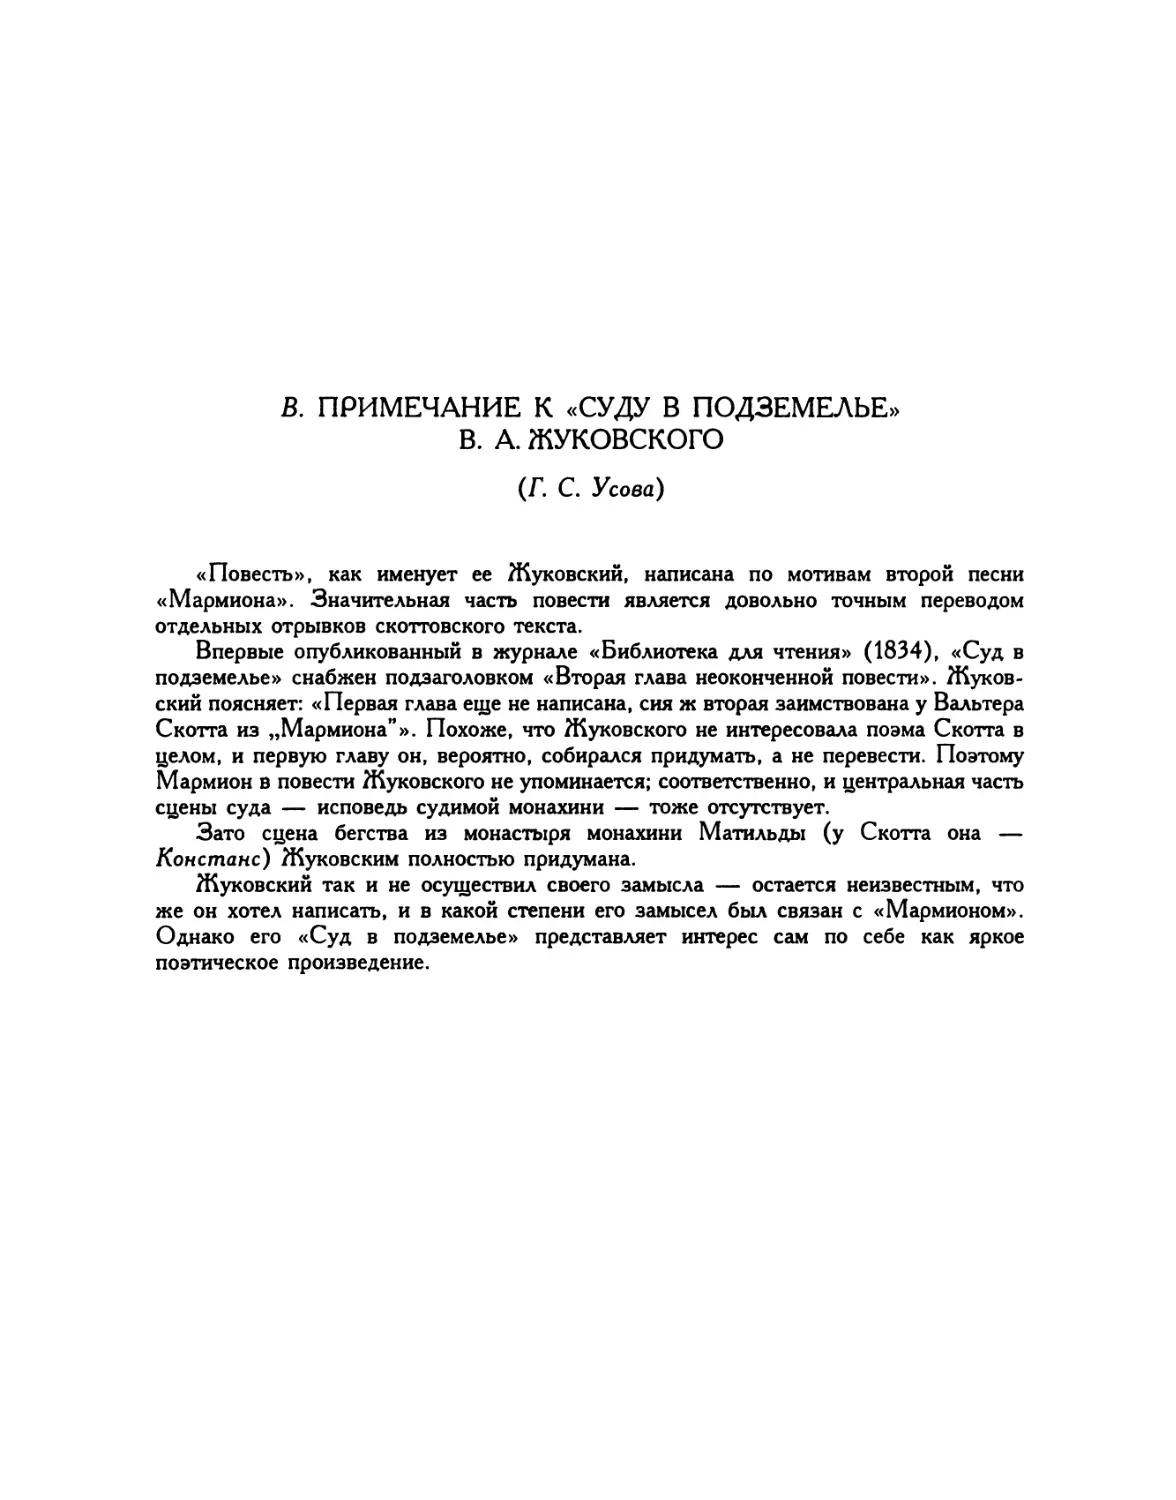 B. Примечание к «Суду в подземелье» В. А. Жуковского